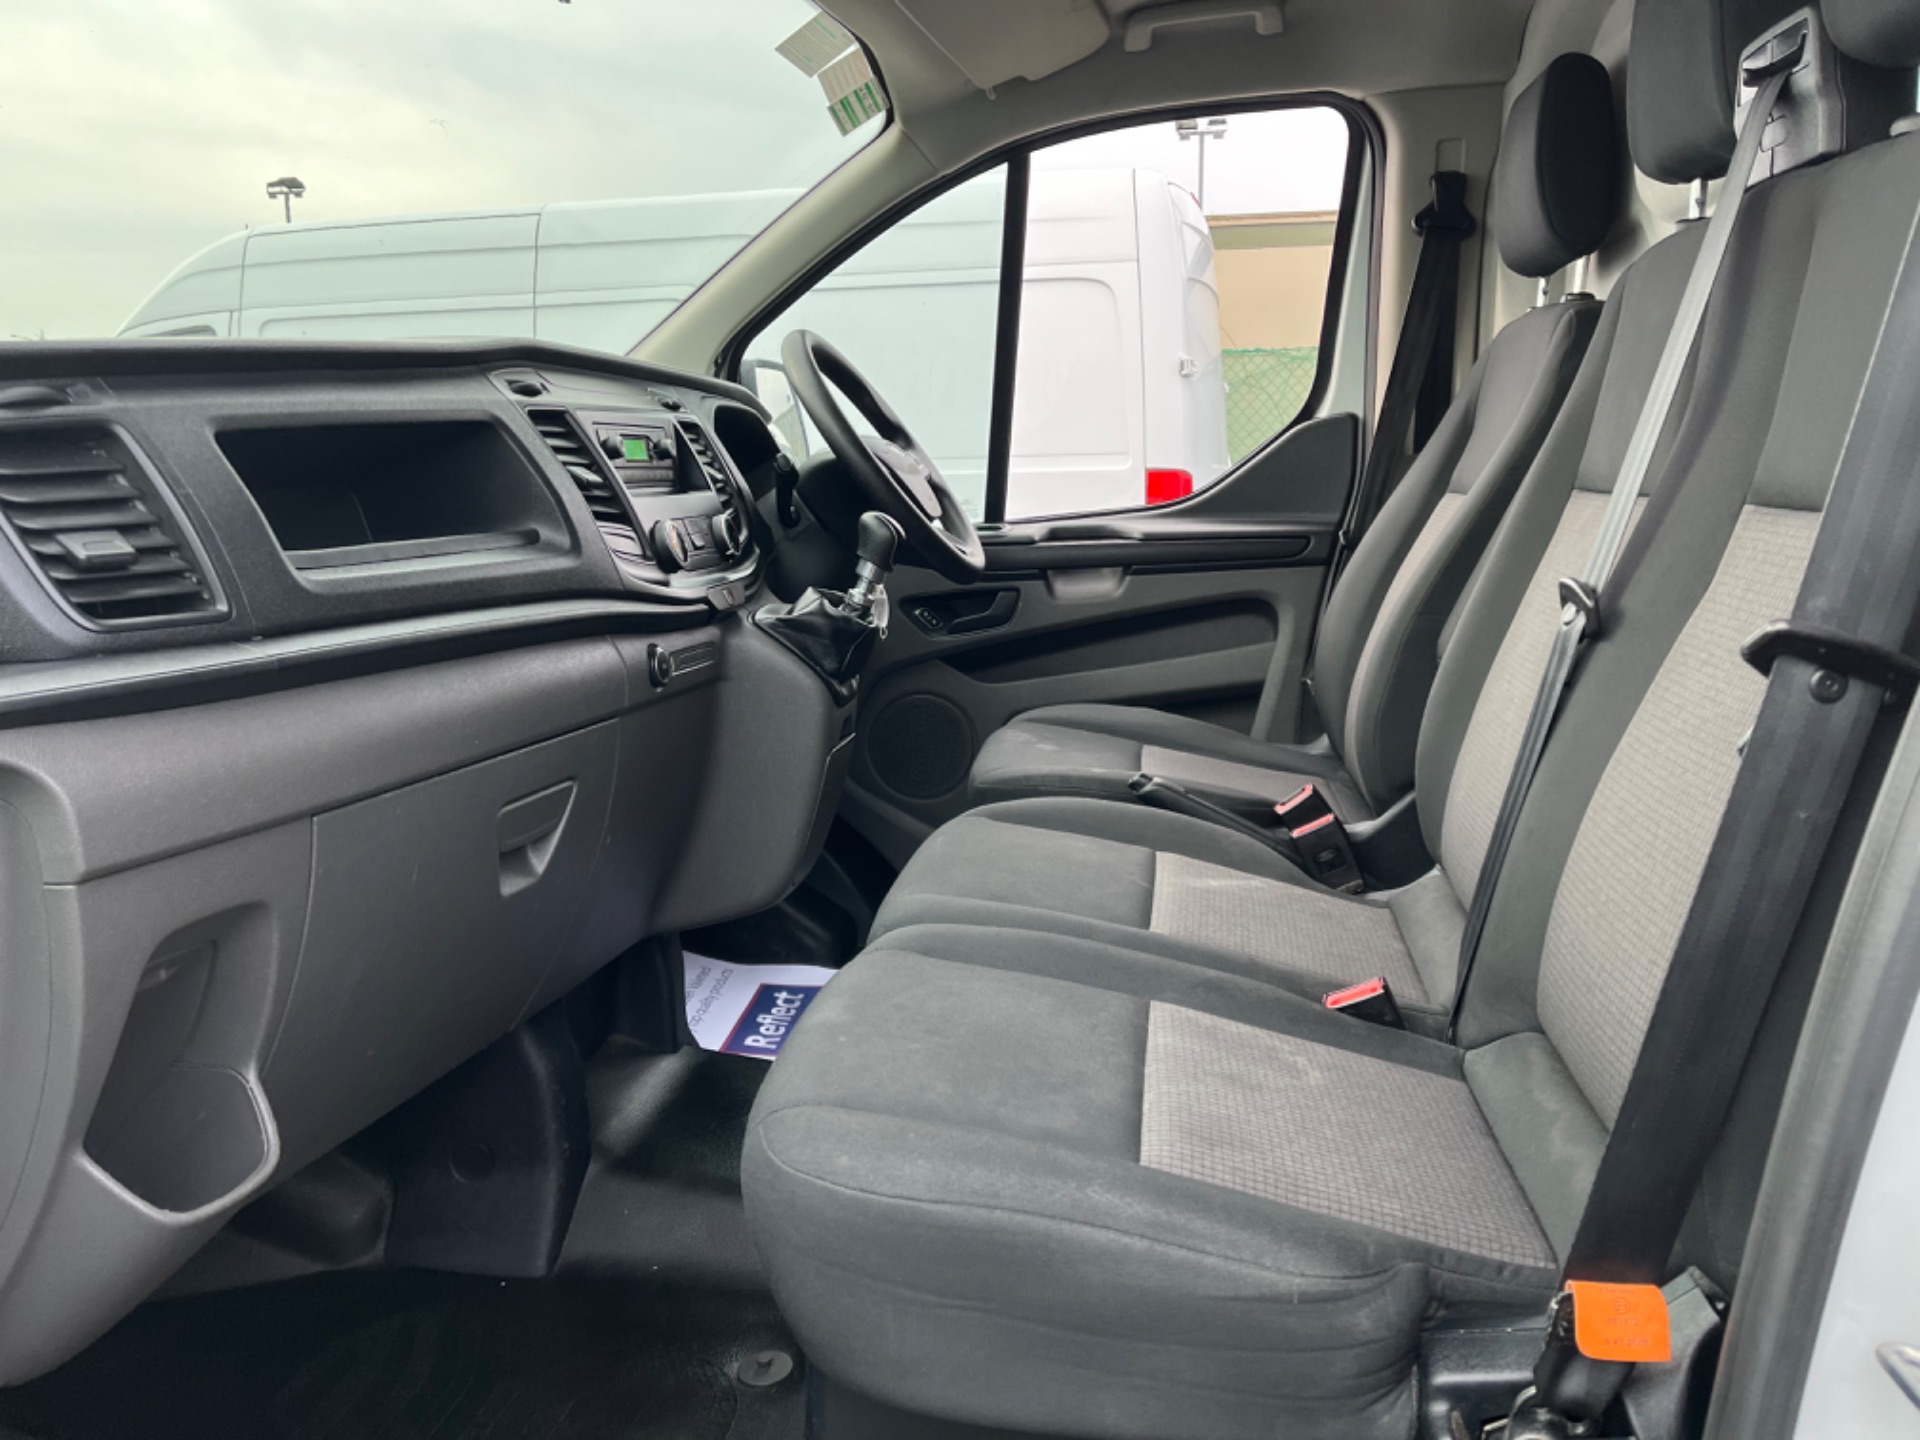 2019 Ford Transit Custom 300L Base 2.0 105PS 3D (191D18492) Image 13